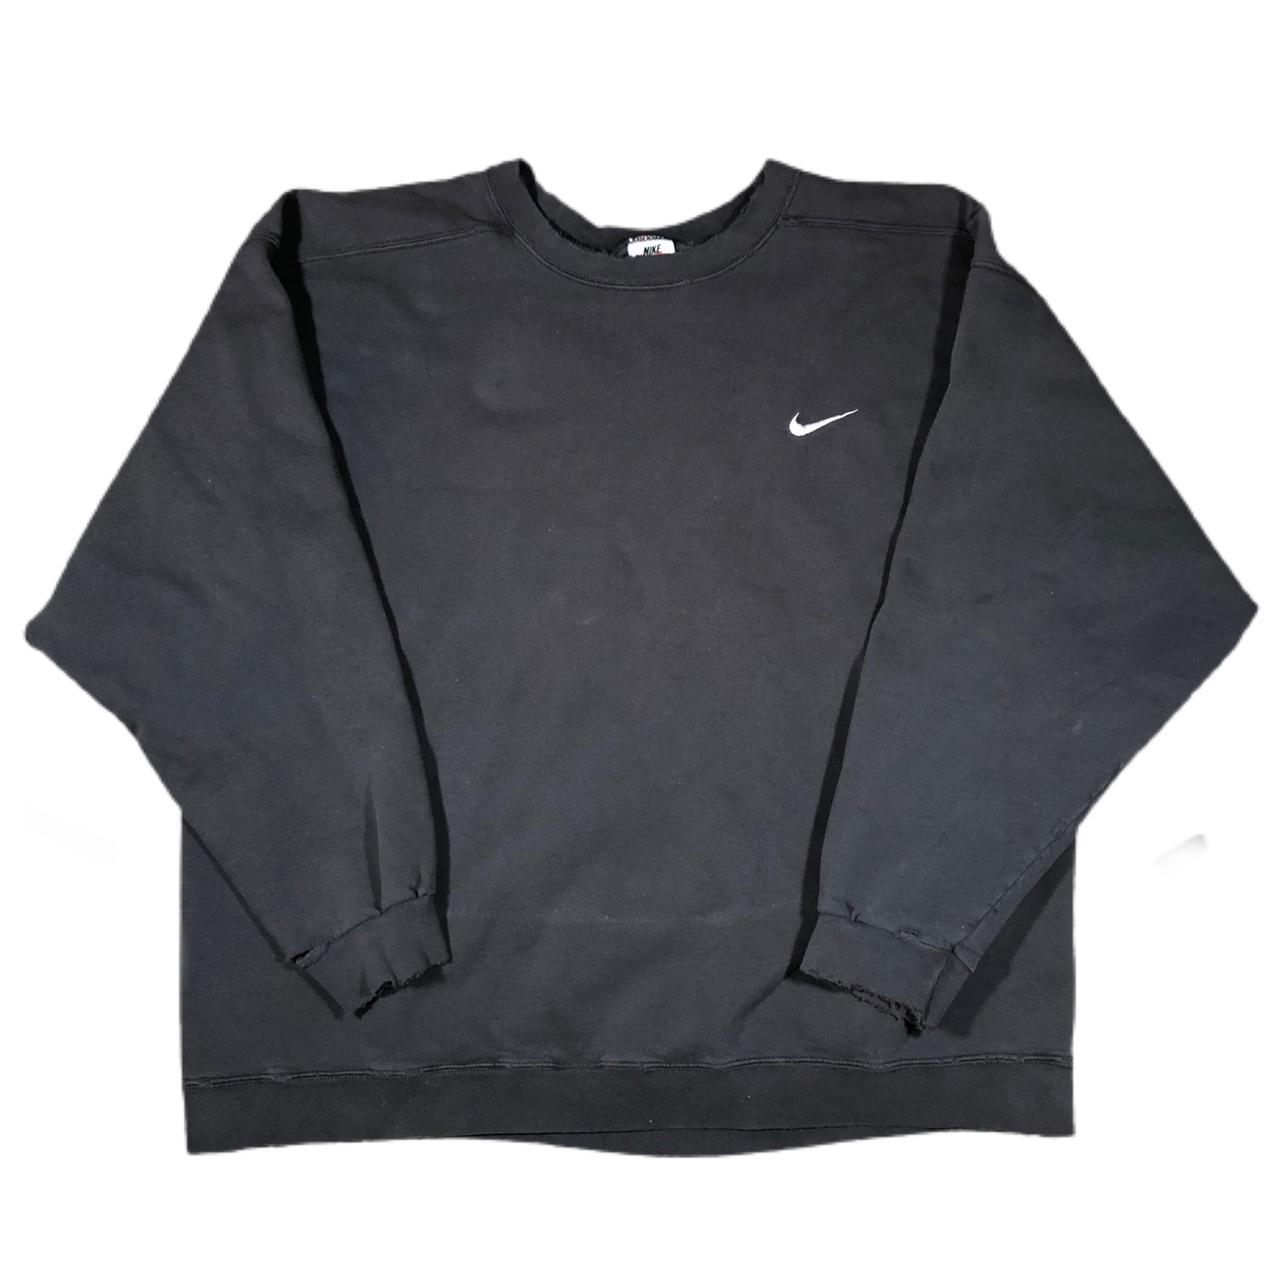 Vintage Nike simple swoosh crewneck sweatshirt. Hole... - Depop